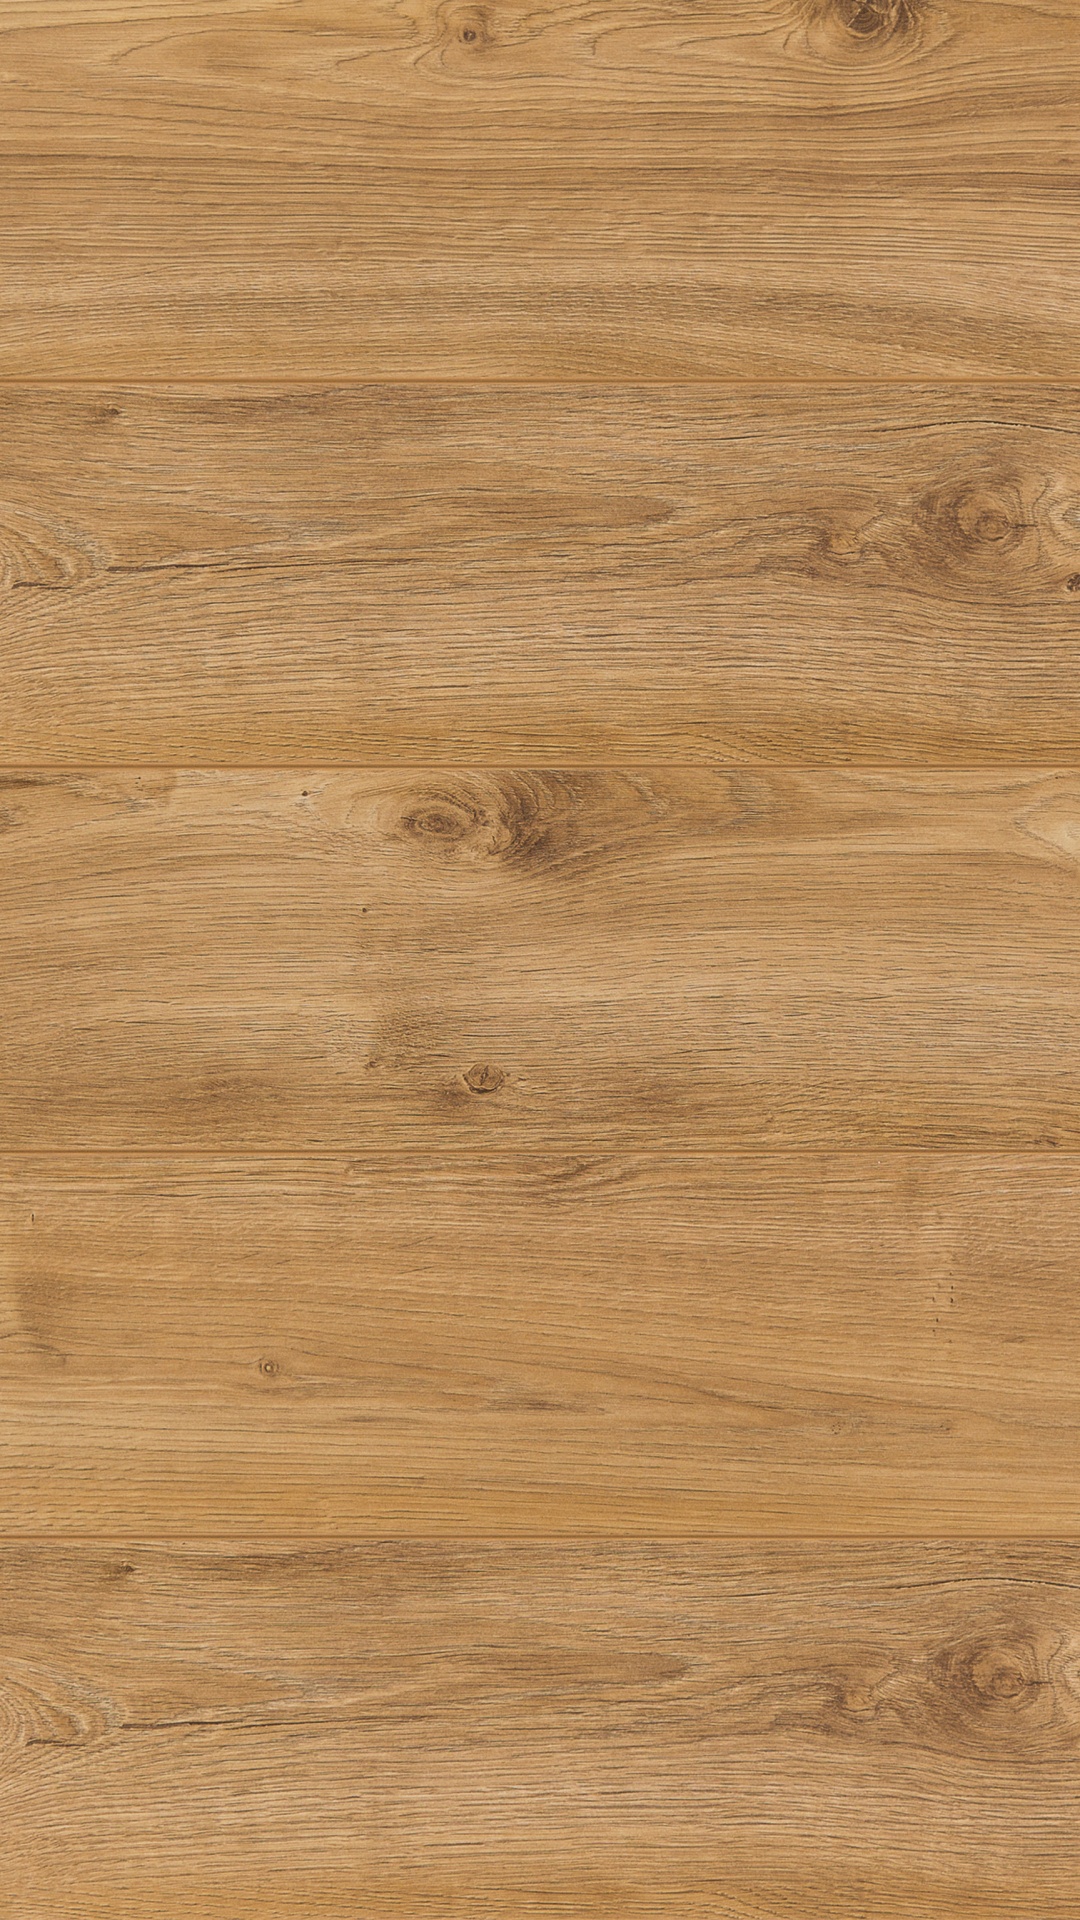 Brown Wooden Parquet Floor Tiles. Wallpaper in 1080x1920 Resolution